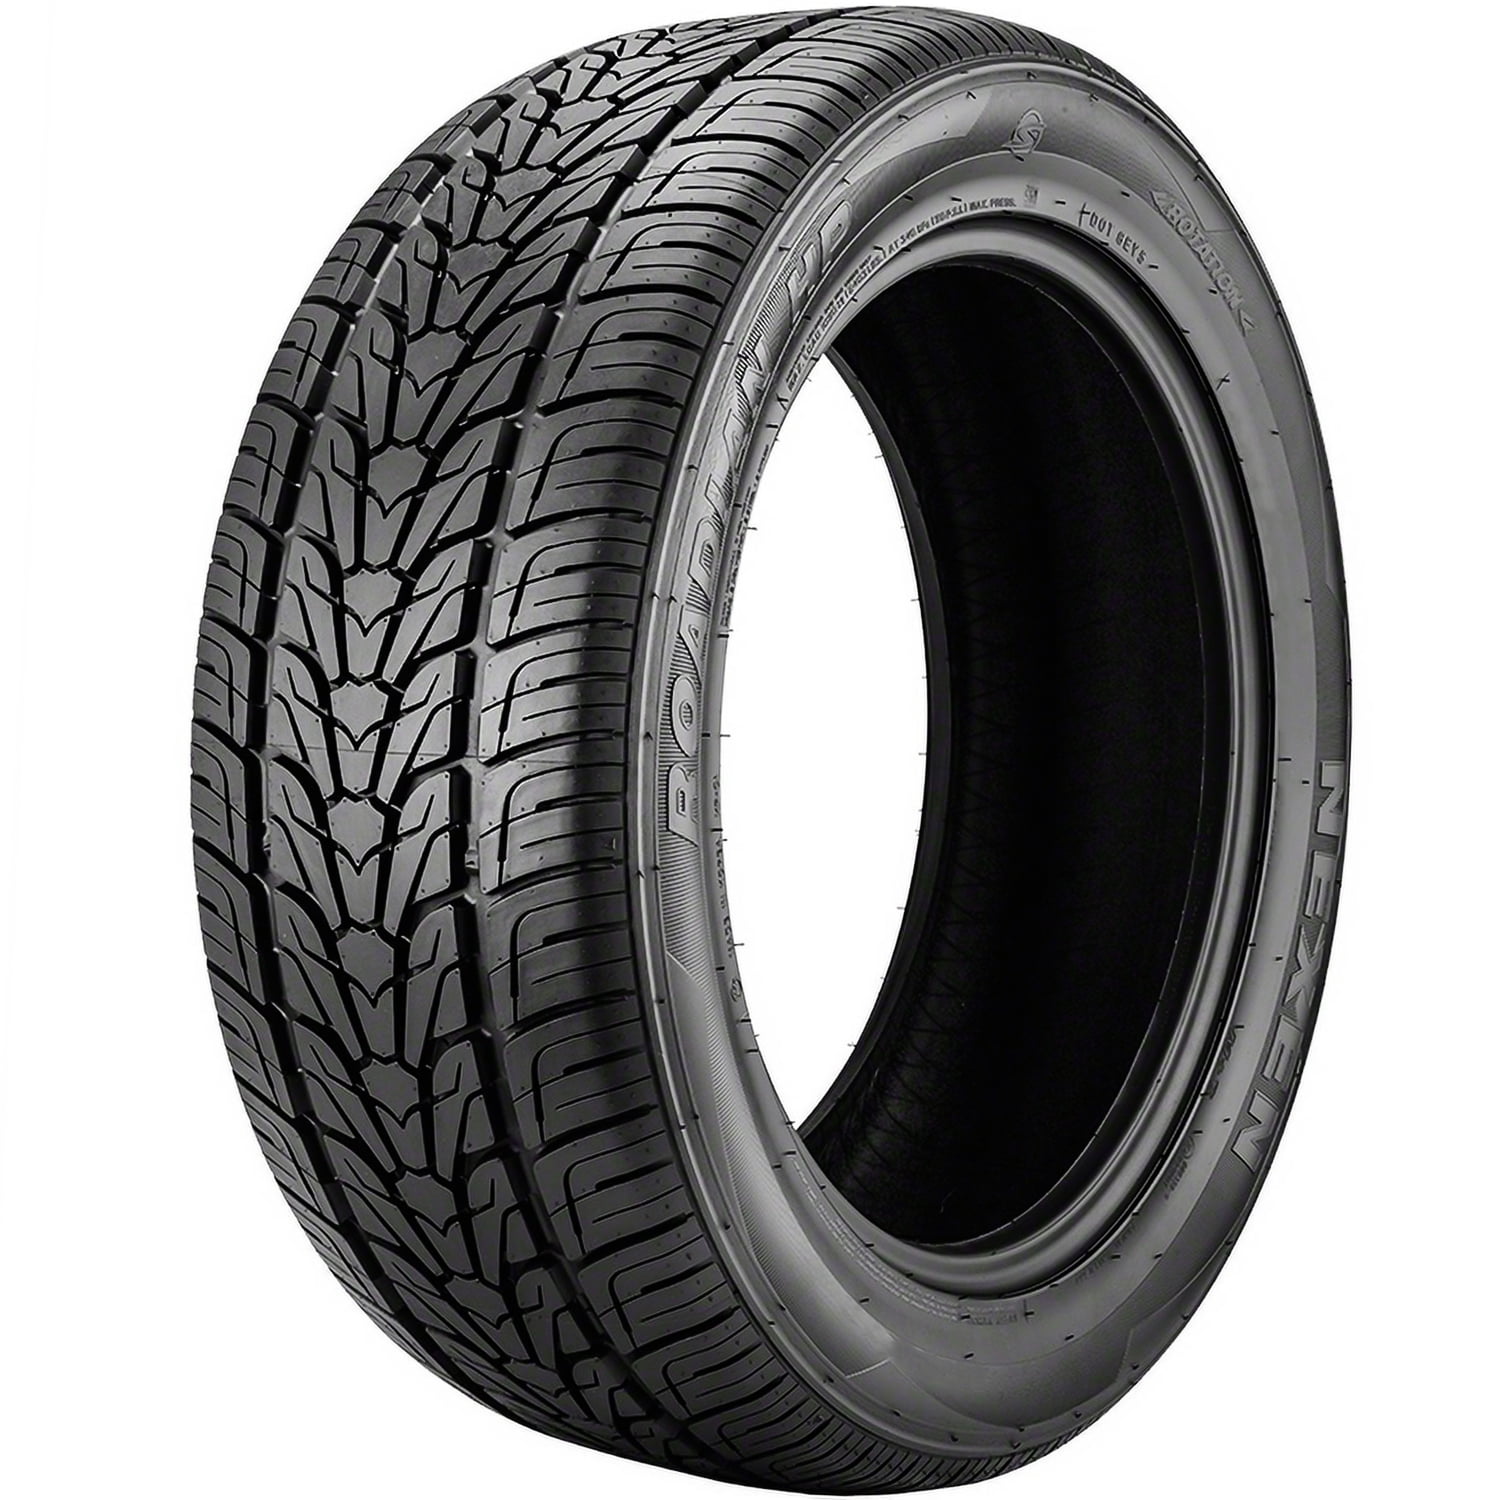 Nexen Roadian HP 295/40R20 106 V Tire